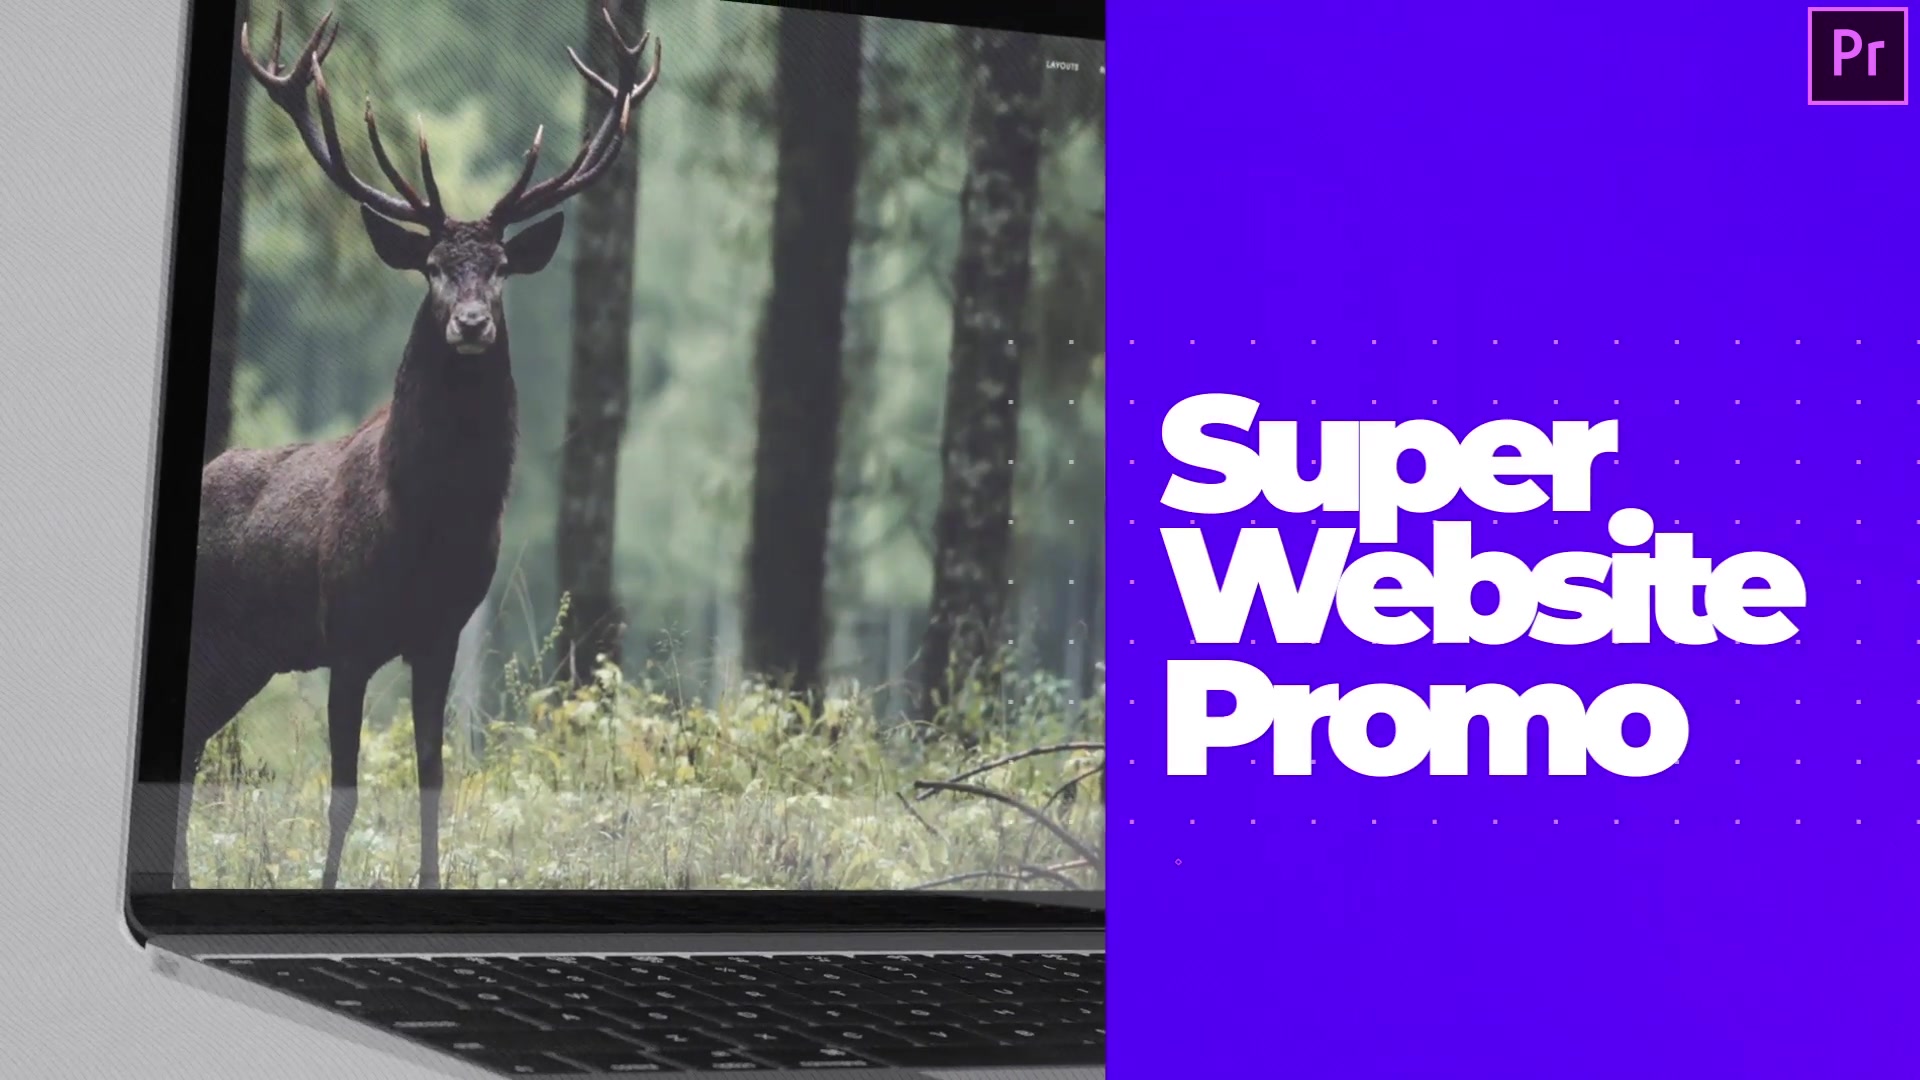 Super Website Promo Web Showcase Video Premiere Pro Videohive 34396861 Premiere Pro Image 5